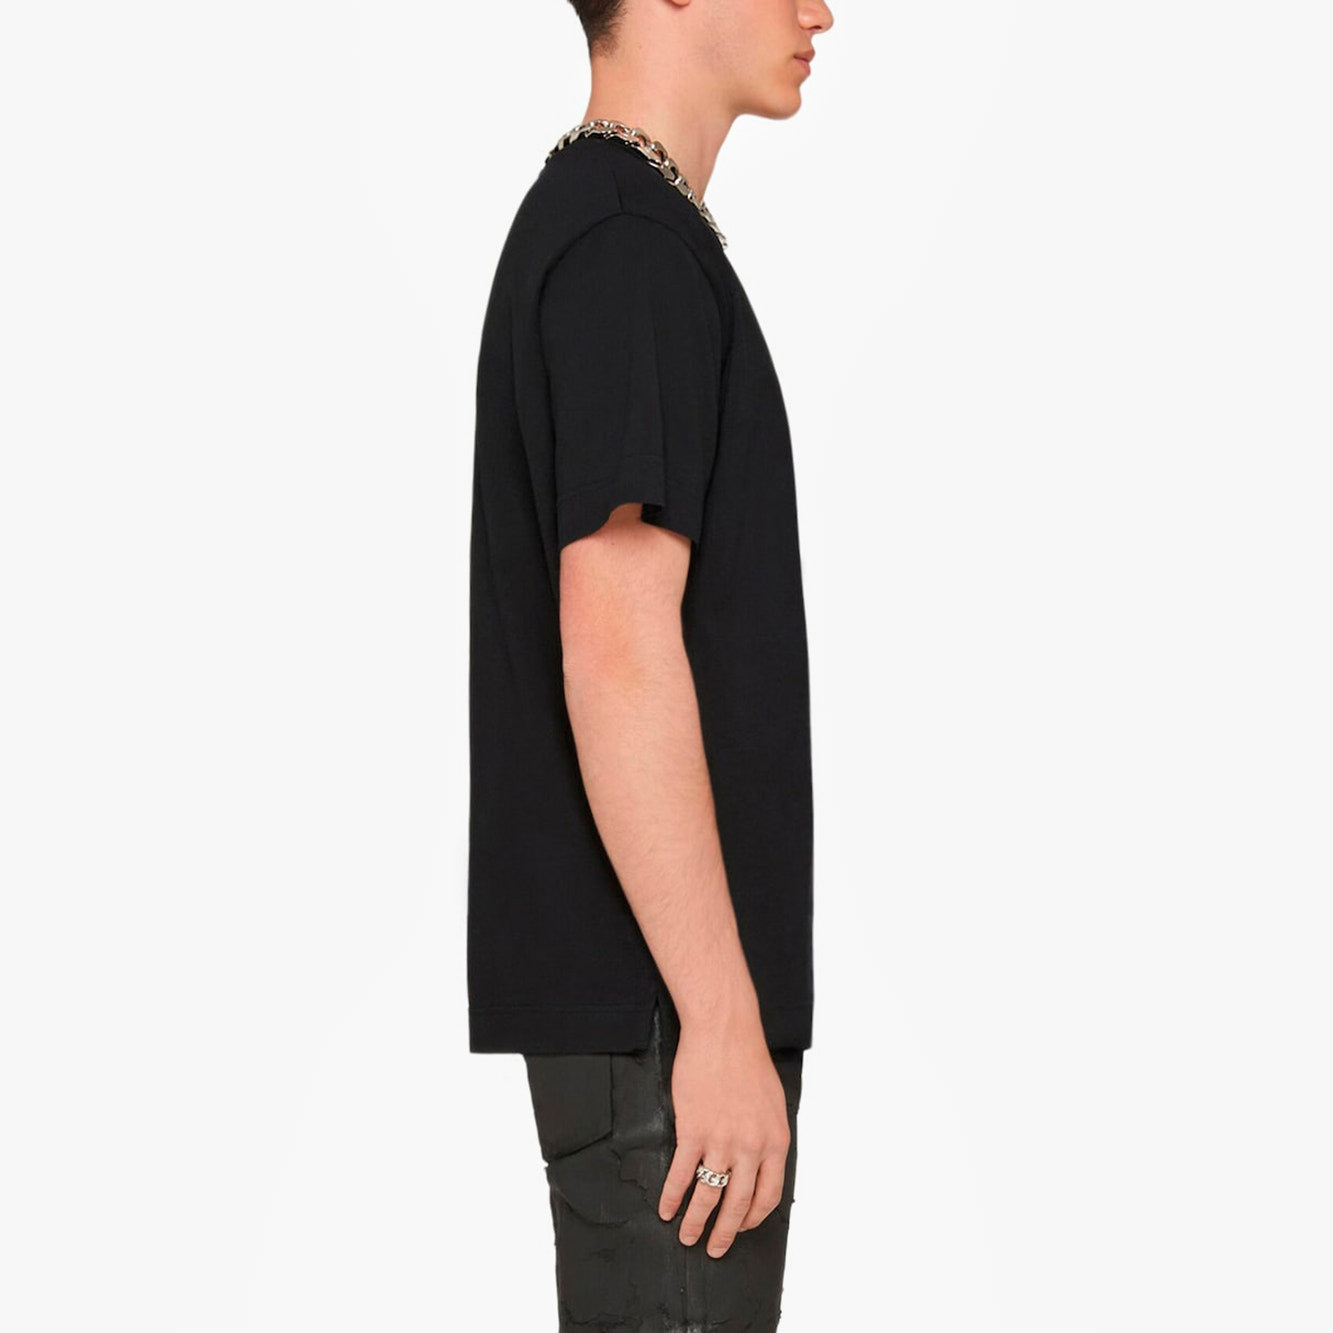 T-Shirt Givenchy Slim Noir à Logo 4G